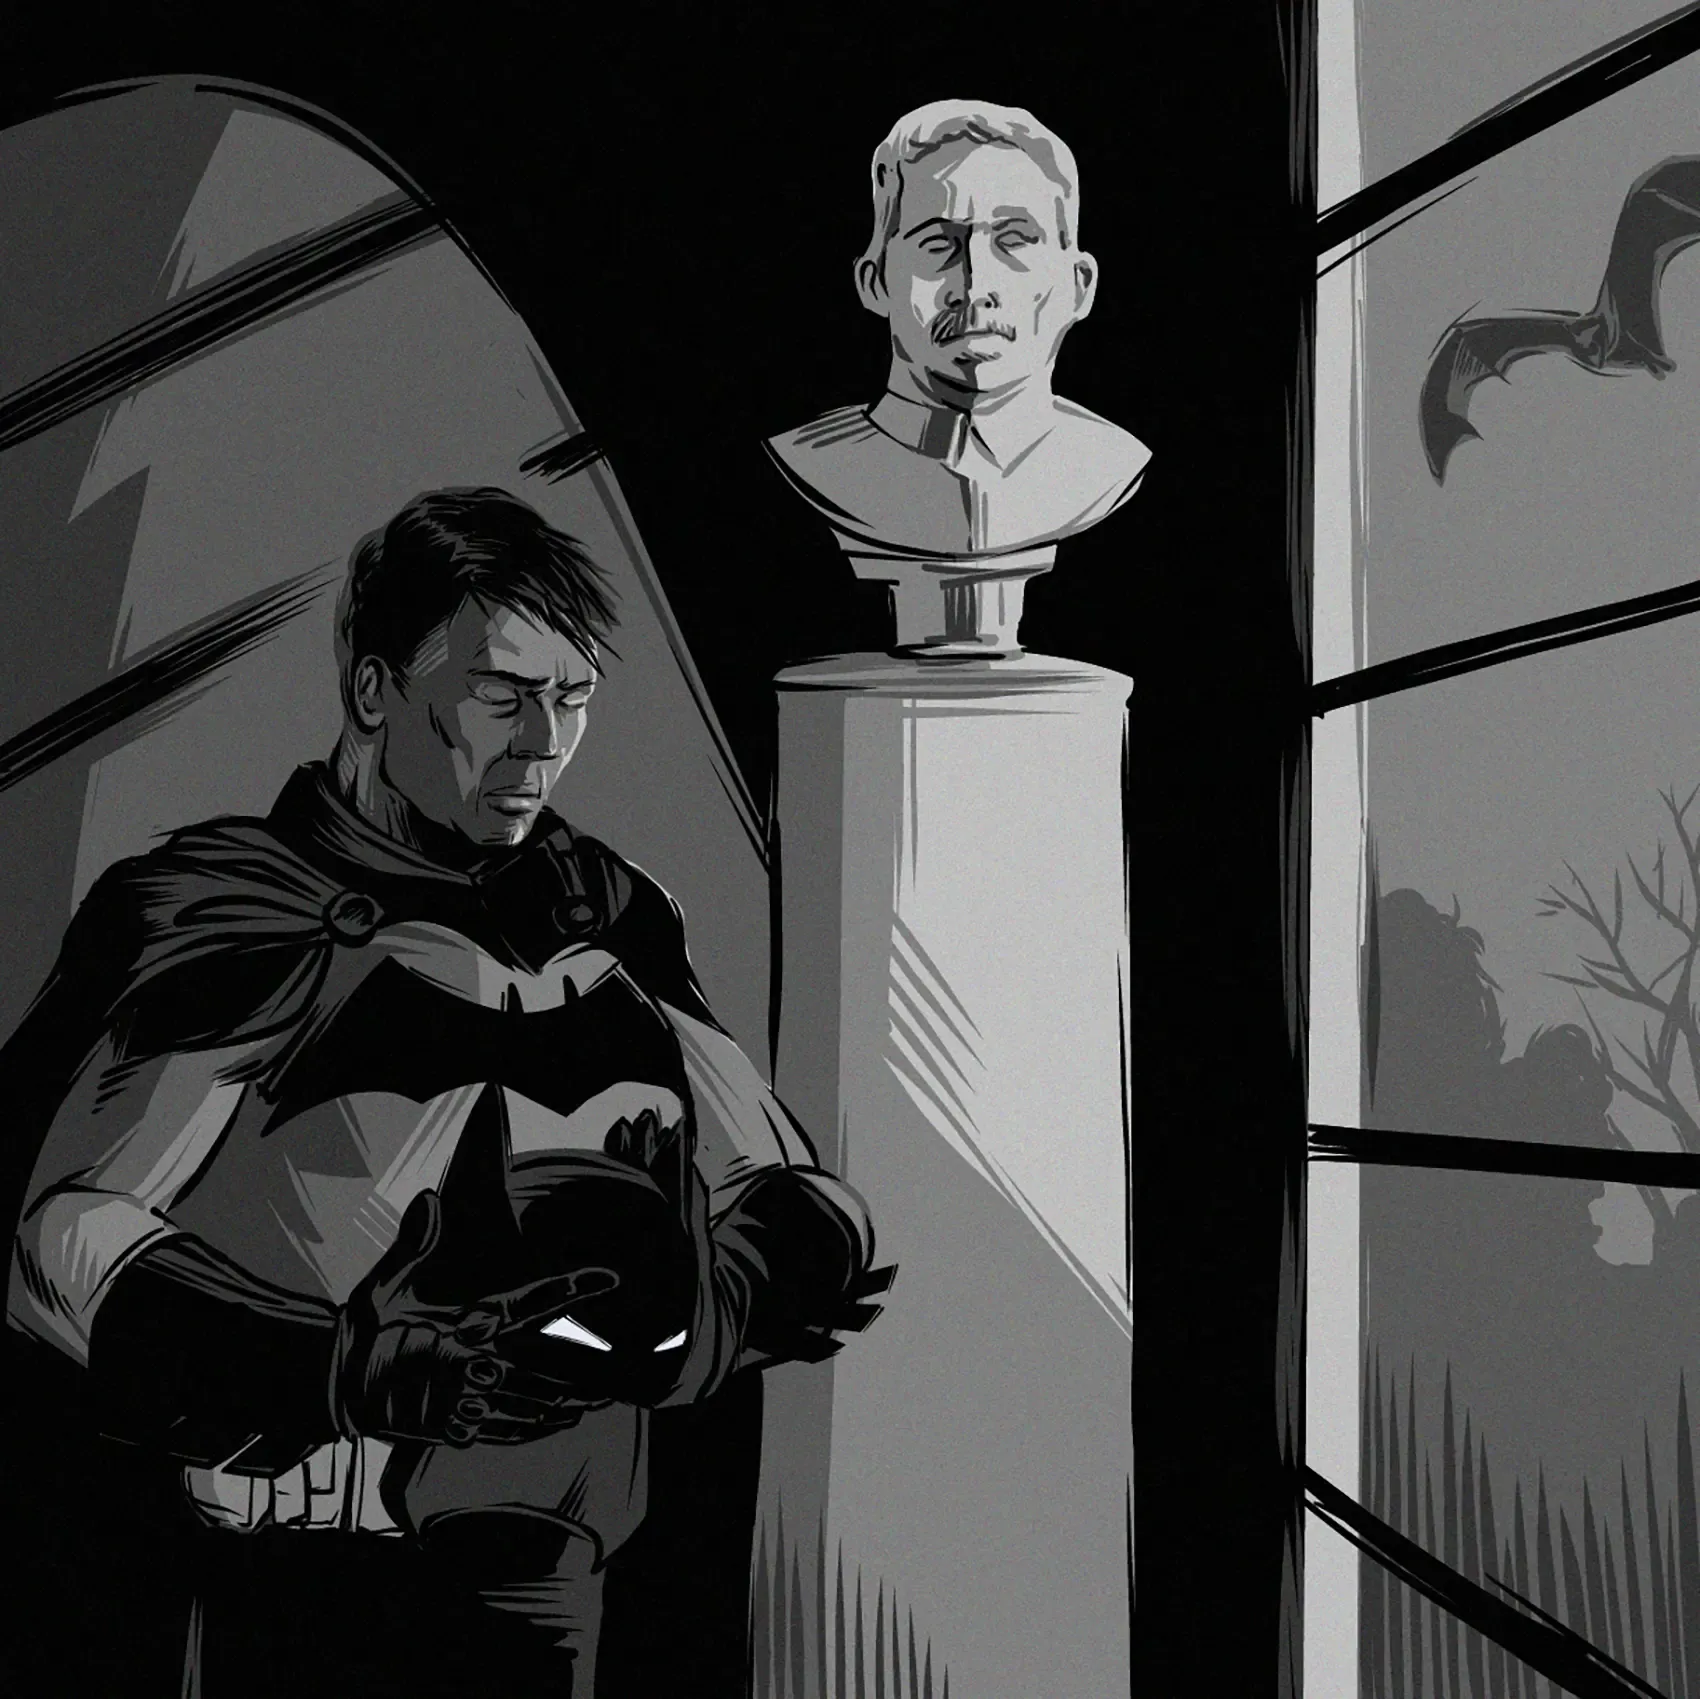 Bruce Wayne with a memorial bust of Thomas Wayne